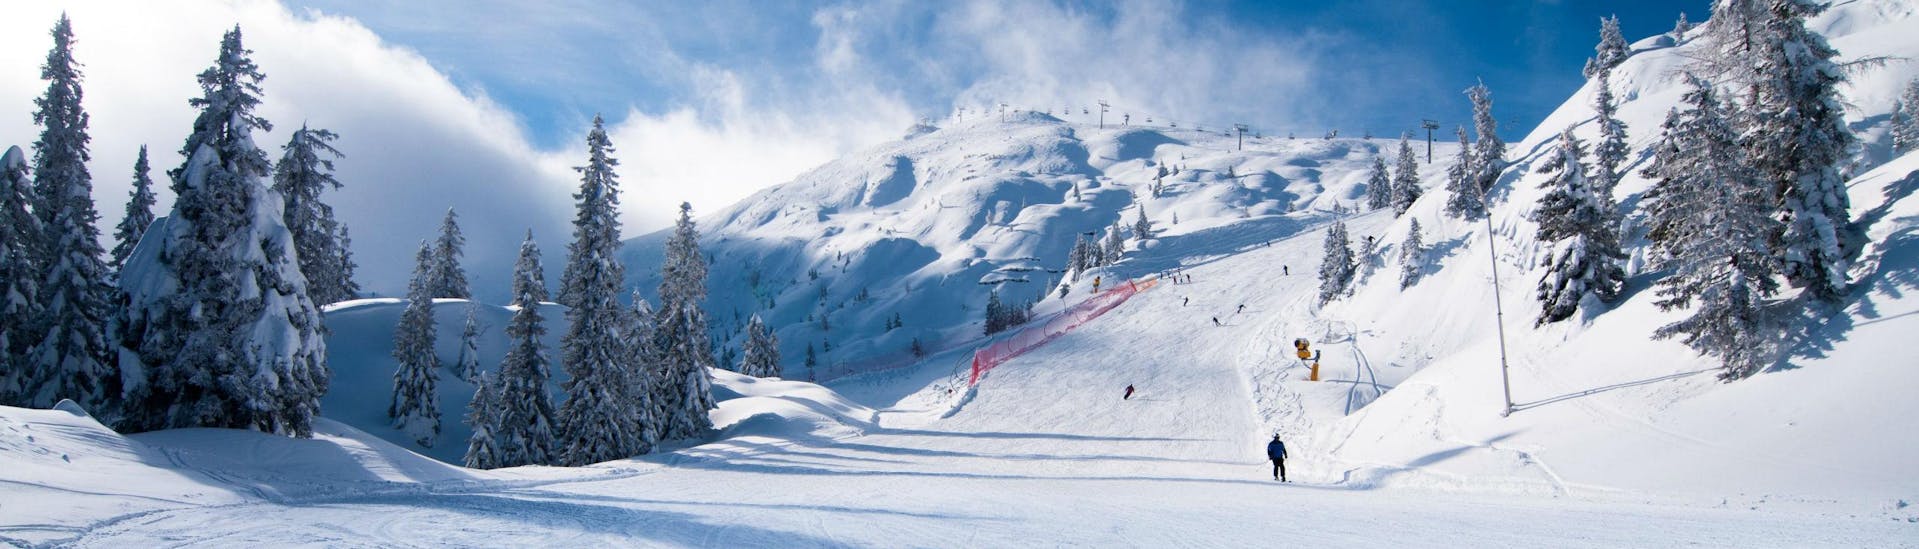 Una coppia di sciatori scia lungo una pista da sci appena battuta nella stazione sciistica italiana di Andalo, dove le scuole di sci locali offrono numerose lezioni di sci.